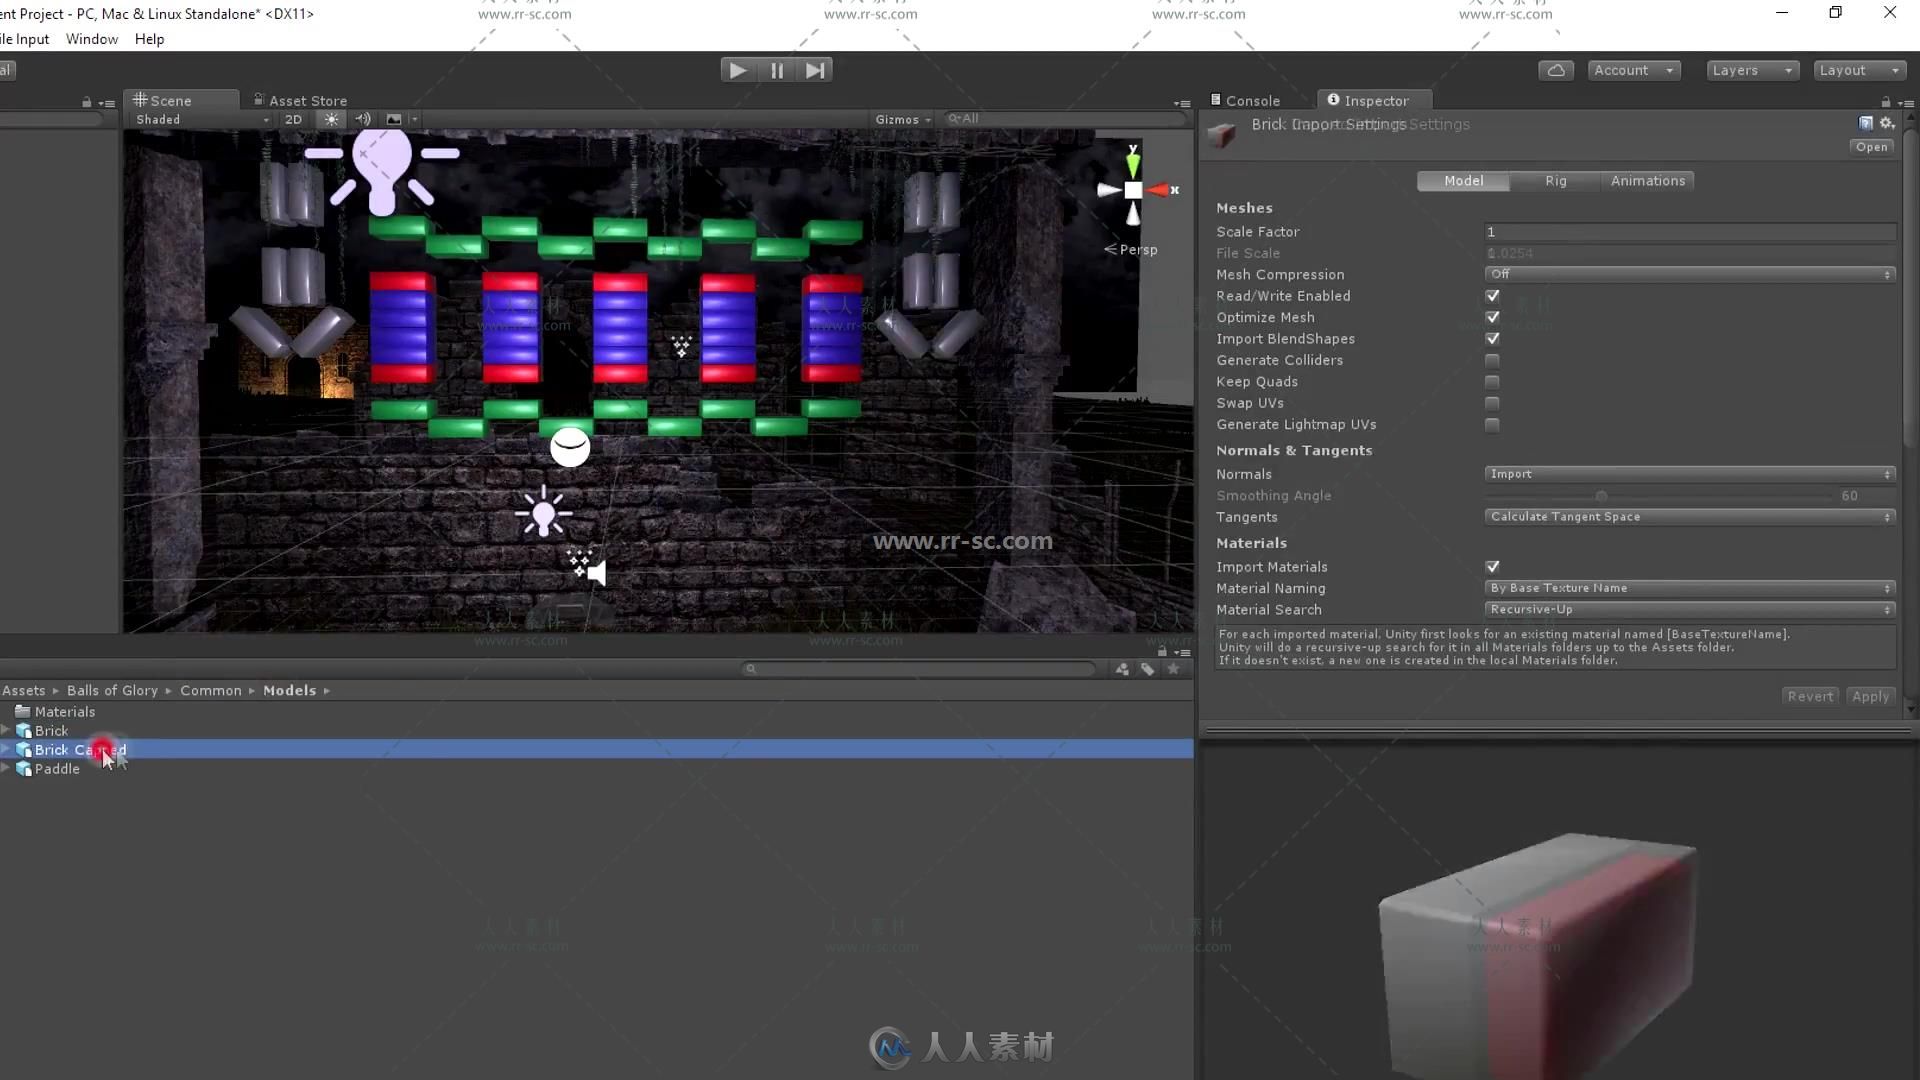 Unity 5商业游戏项目实例制作视频教程第二季